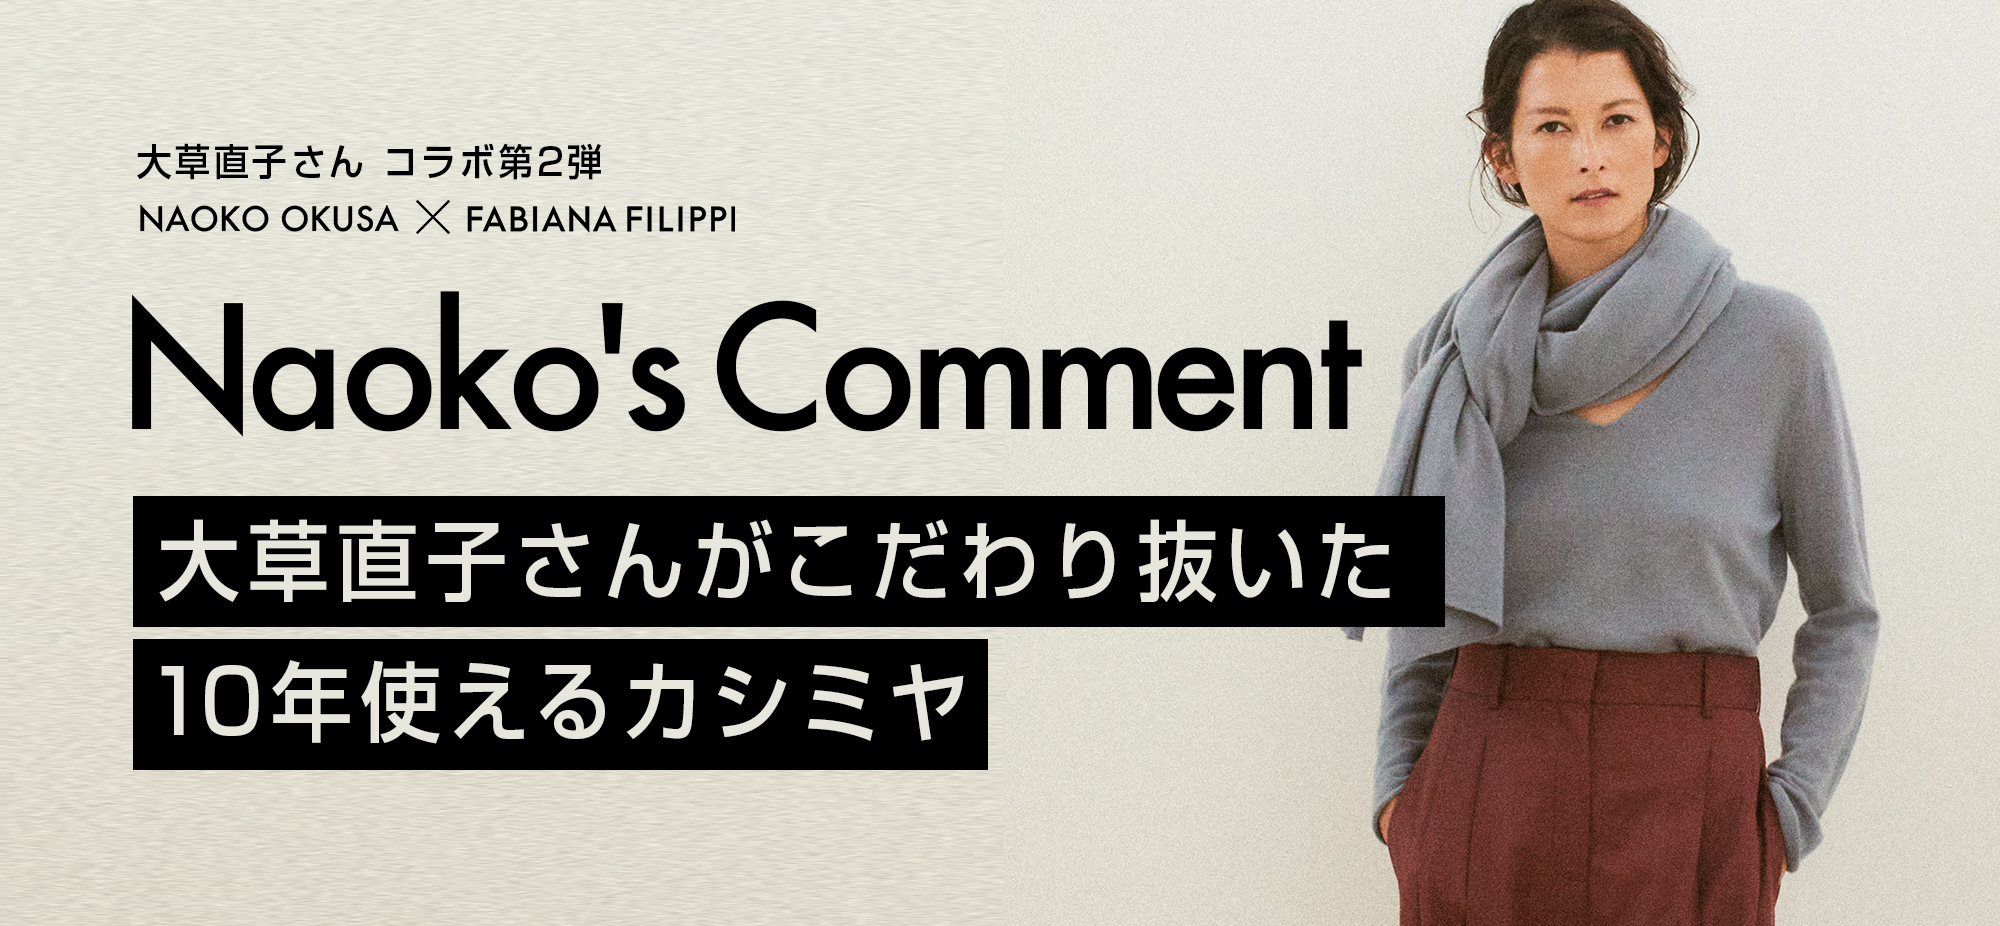 NAOKO OKUSA×FABIANAFILIPPI Naokos Comment